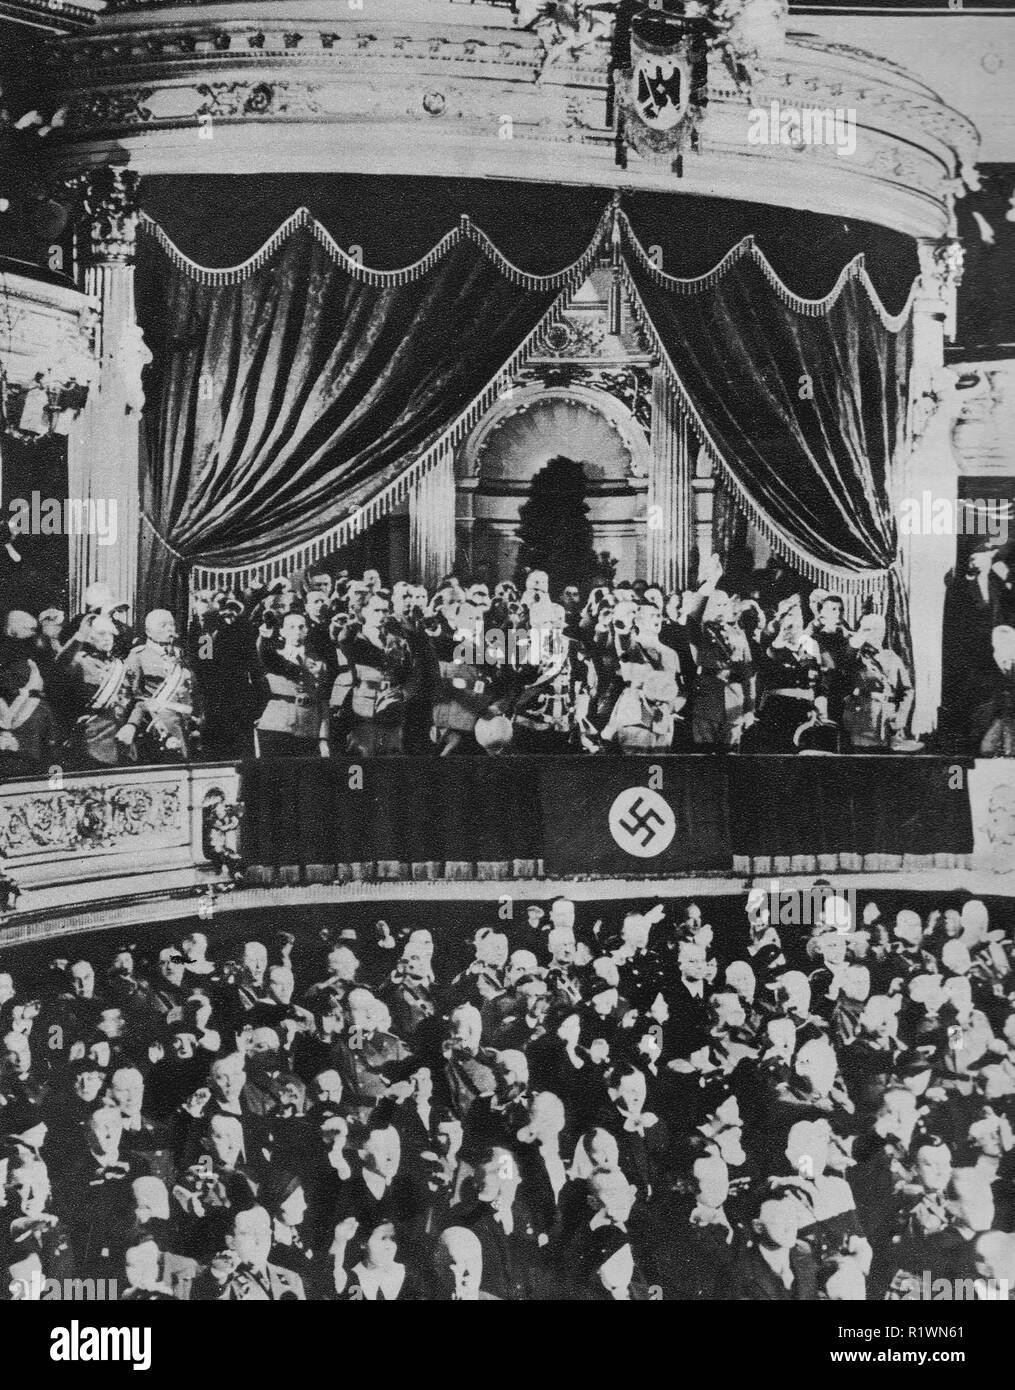 Hitler en Kroll Opera House, Berlín (asiento del Reichstag) El 16 de marzo de 1935 - Día Memorial de los soldados caídos en la guerra anterior - su gabinete Nazi y los seguidores están con él en el balcón dando un saludo nazi Foto de stock